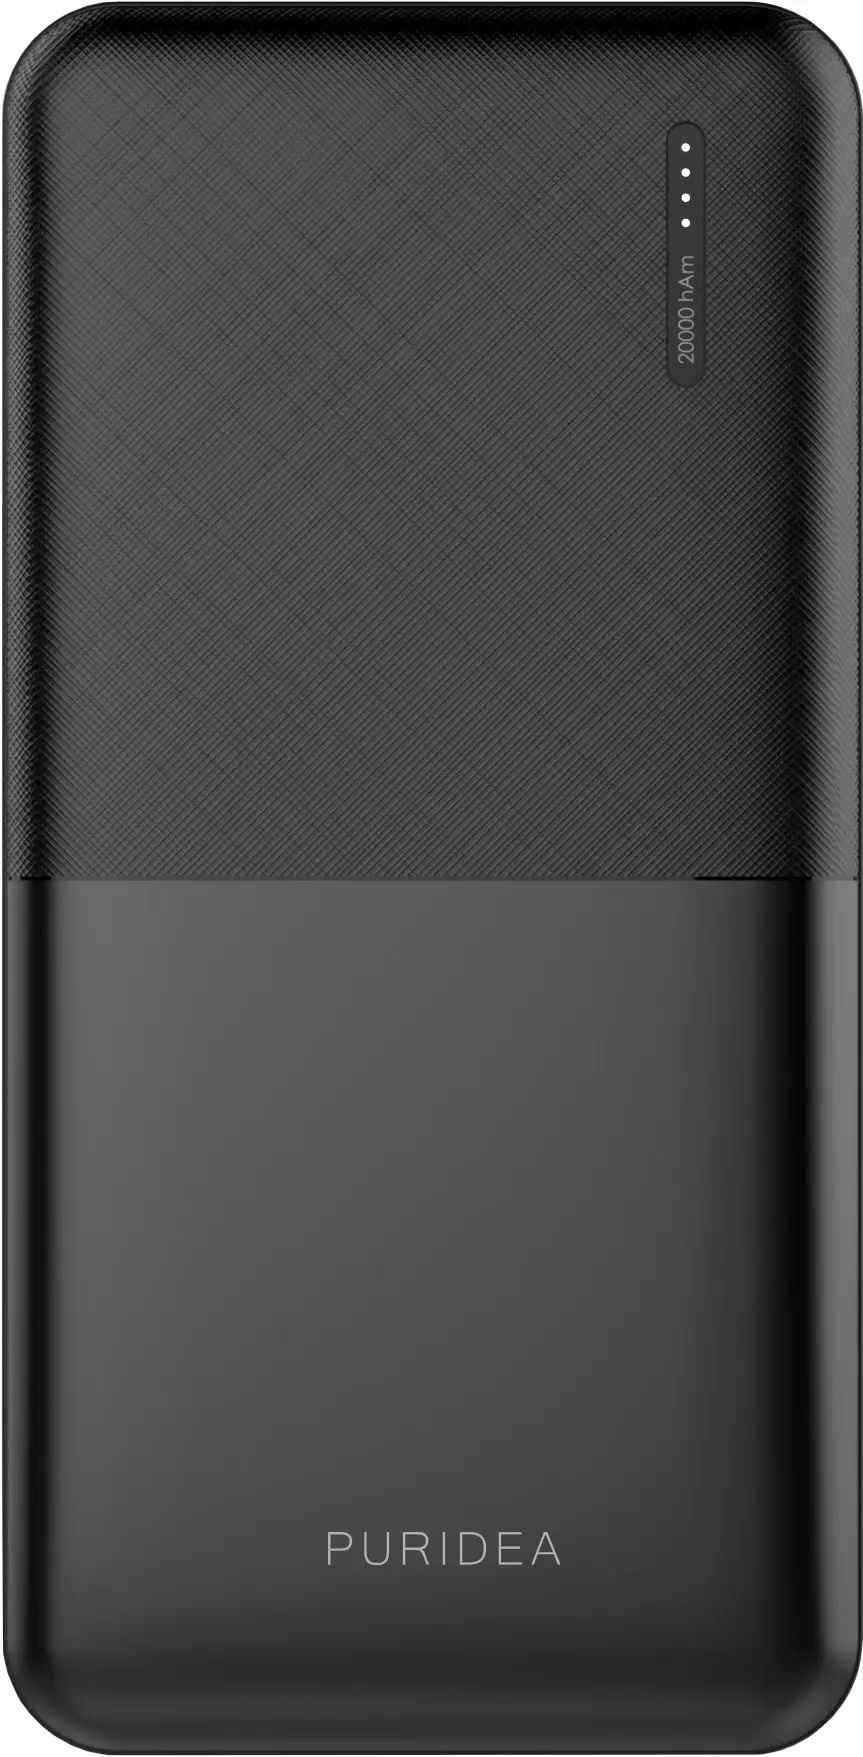 Универсальная мобильная батарея PURIDEA K8 20000mAh Black в Киеве